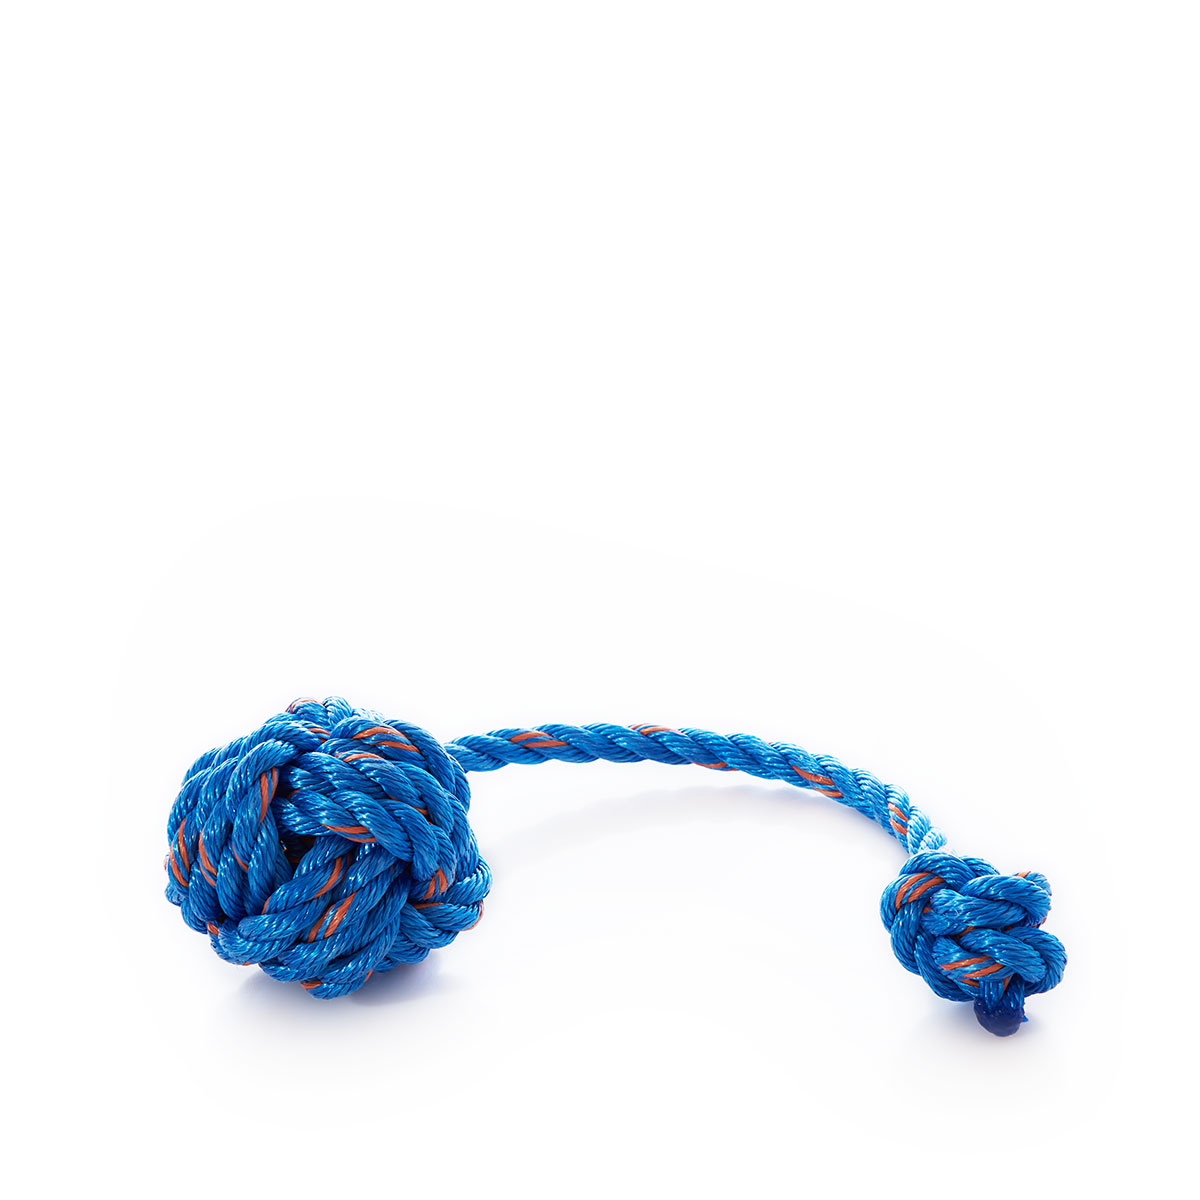 Floating Rope Dog Toy - Blue